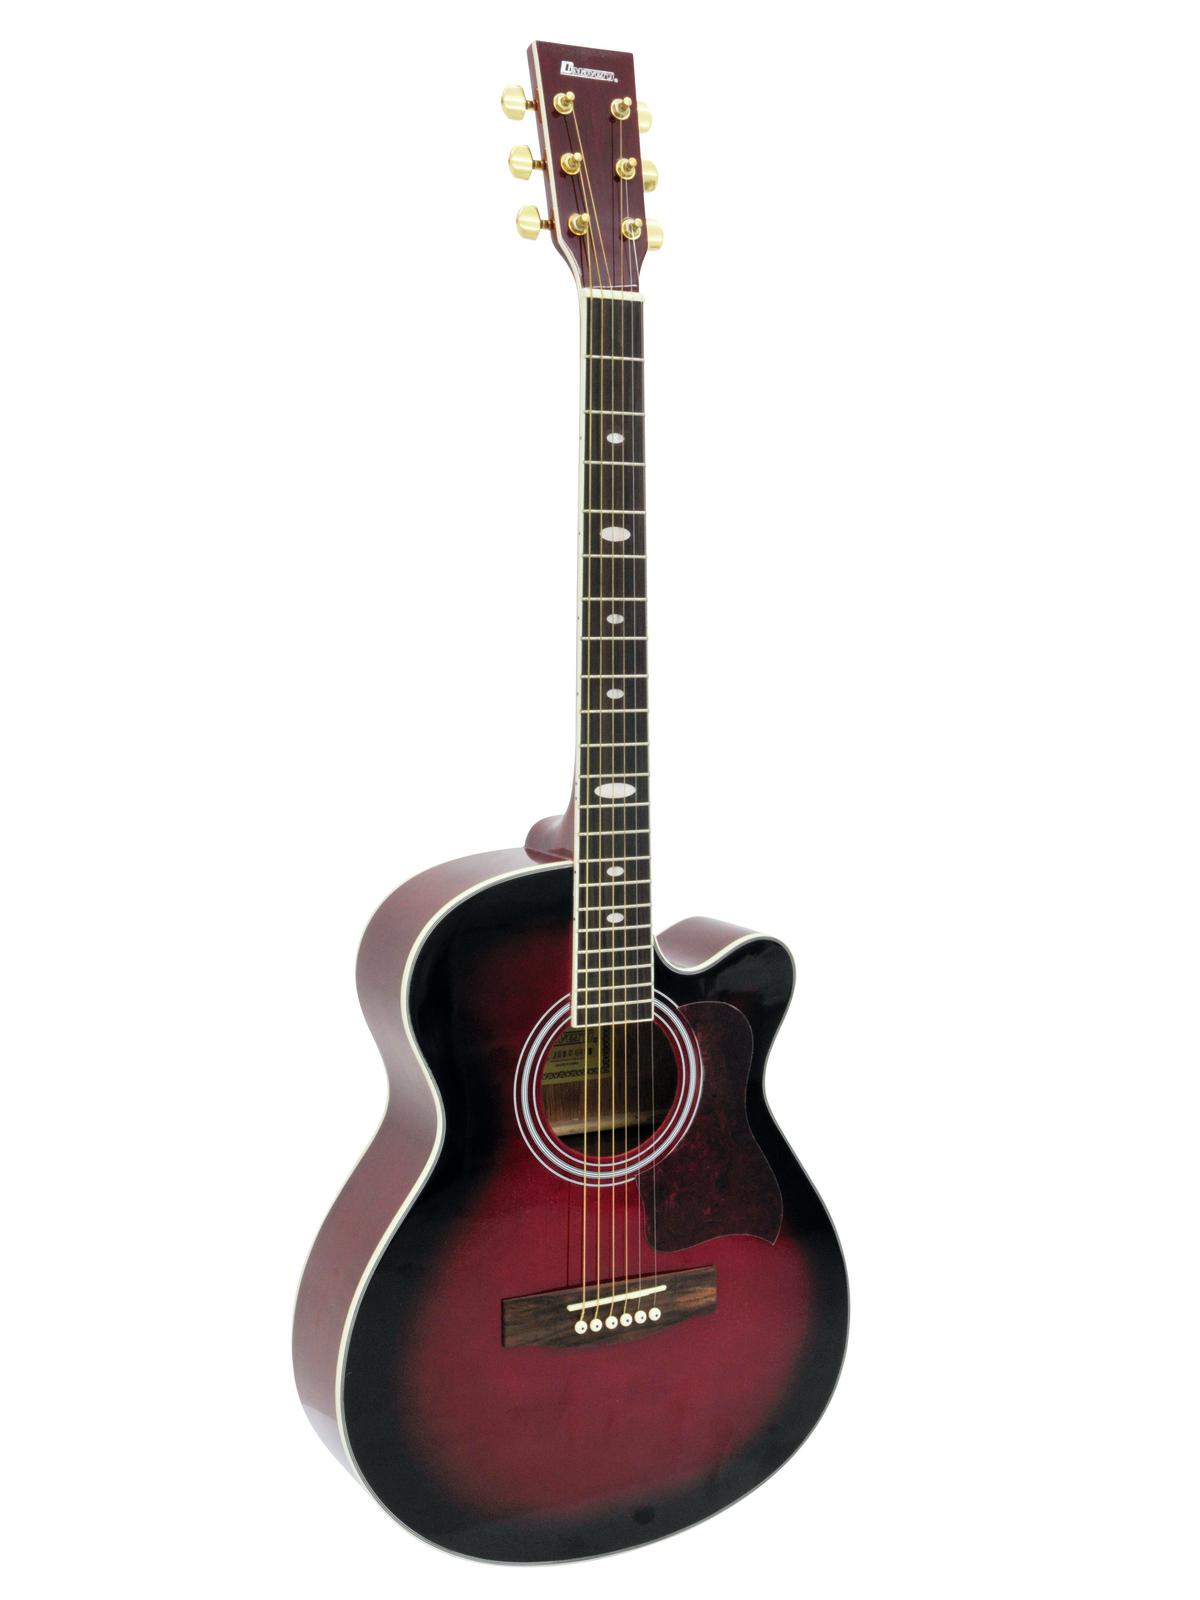 Dimavery JH-500 akustická kytara s výkrojem, červená